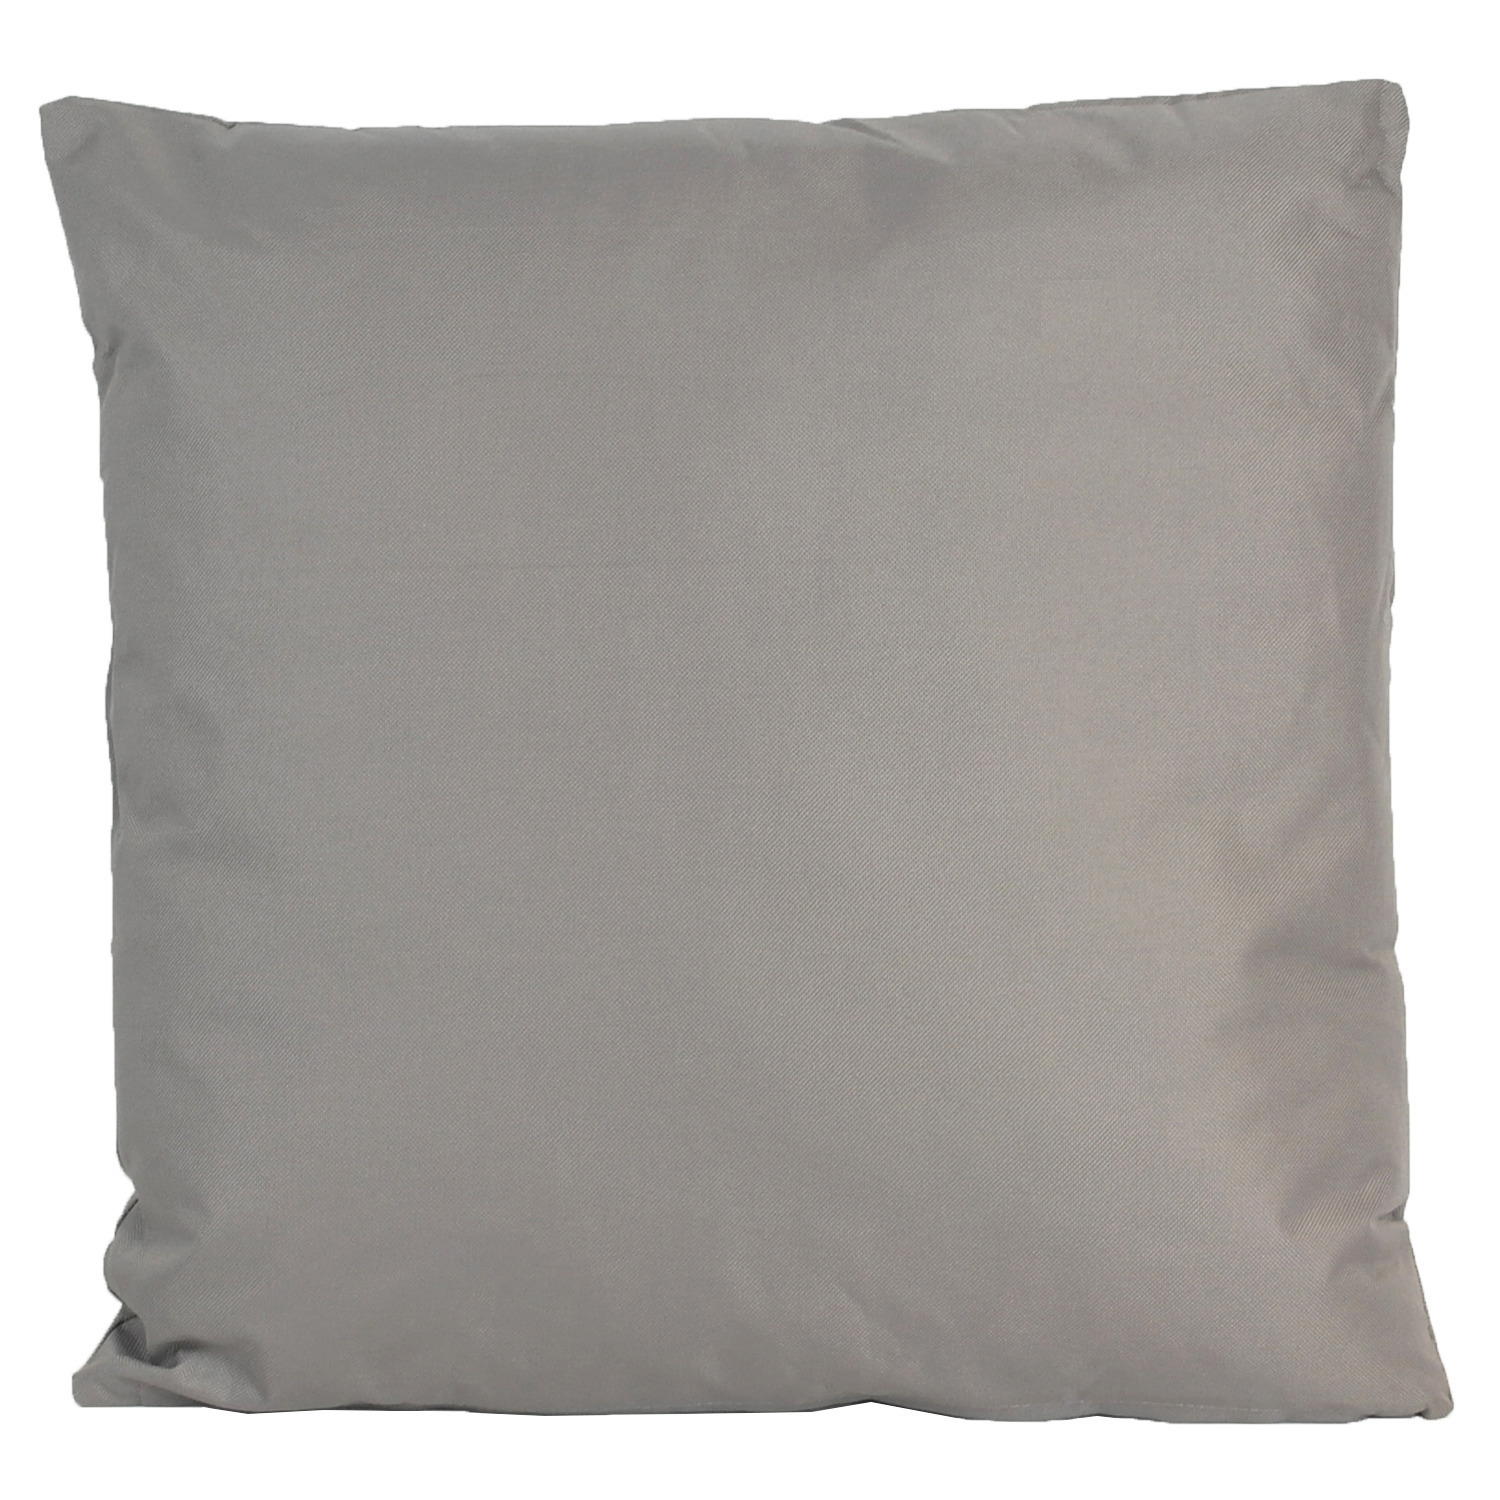 1x Grote bank-sier kussens voor binnen en buiten in de kleur grijs 60 x 60 cm